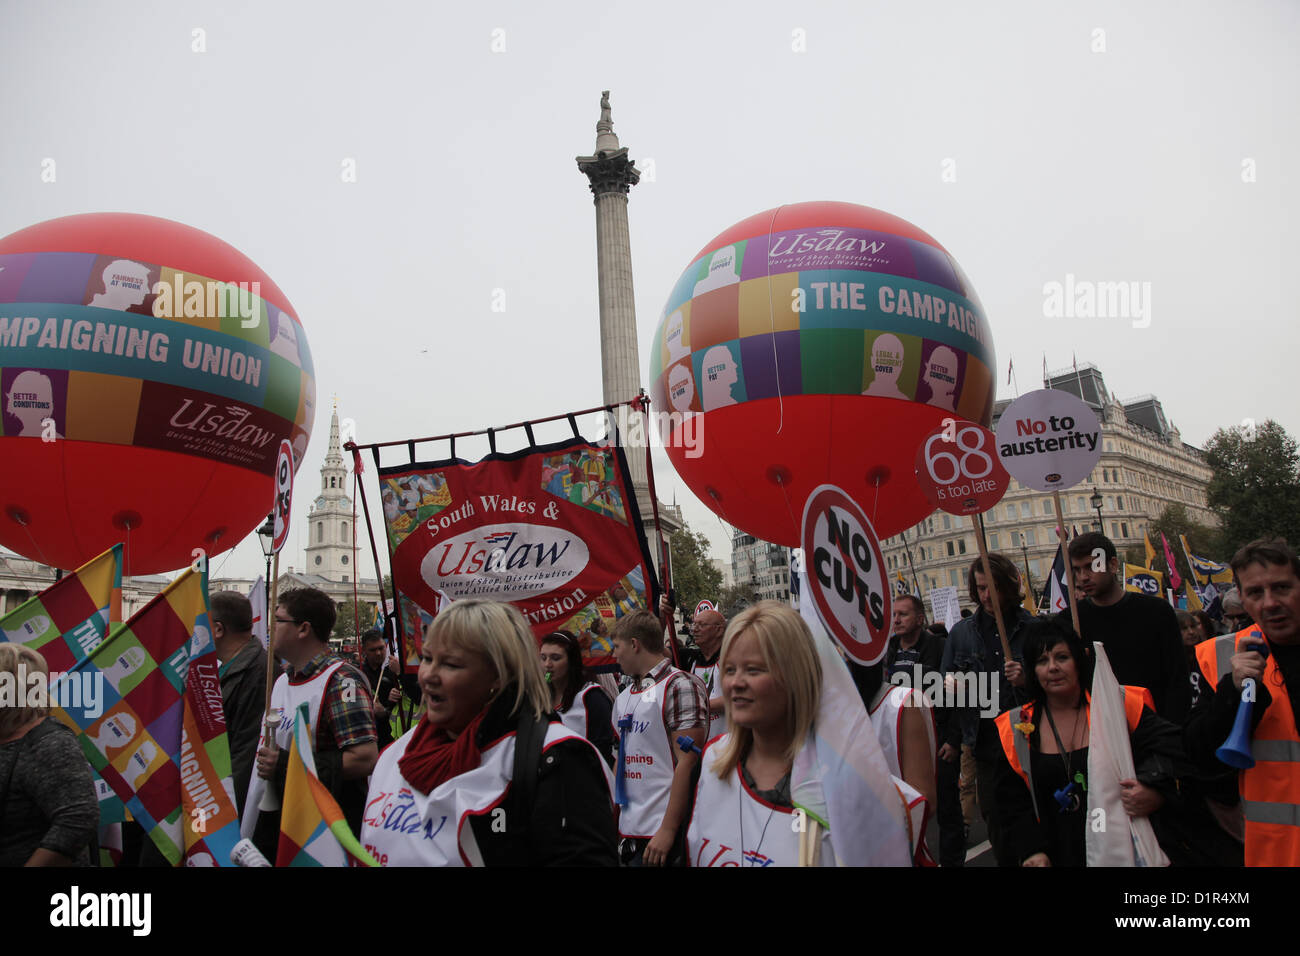 La dimostrazione si muove attraverso Trafalgar Square. 10s di migliaia si rivelò a manifestare contro i tagli operati dal governo. Foto Stock